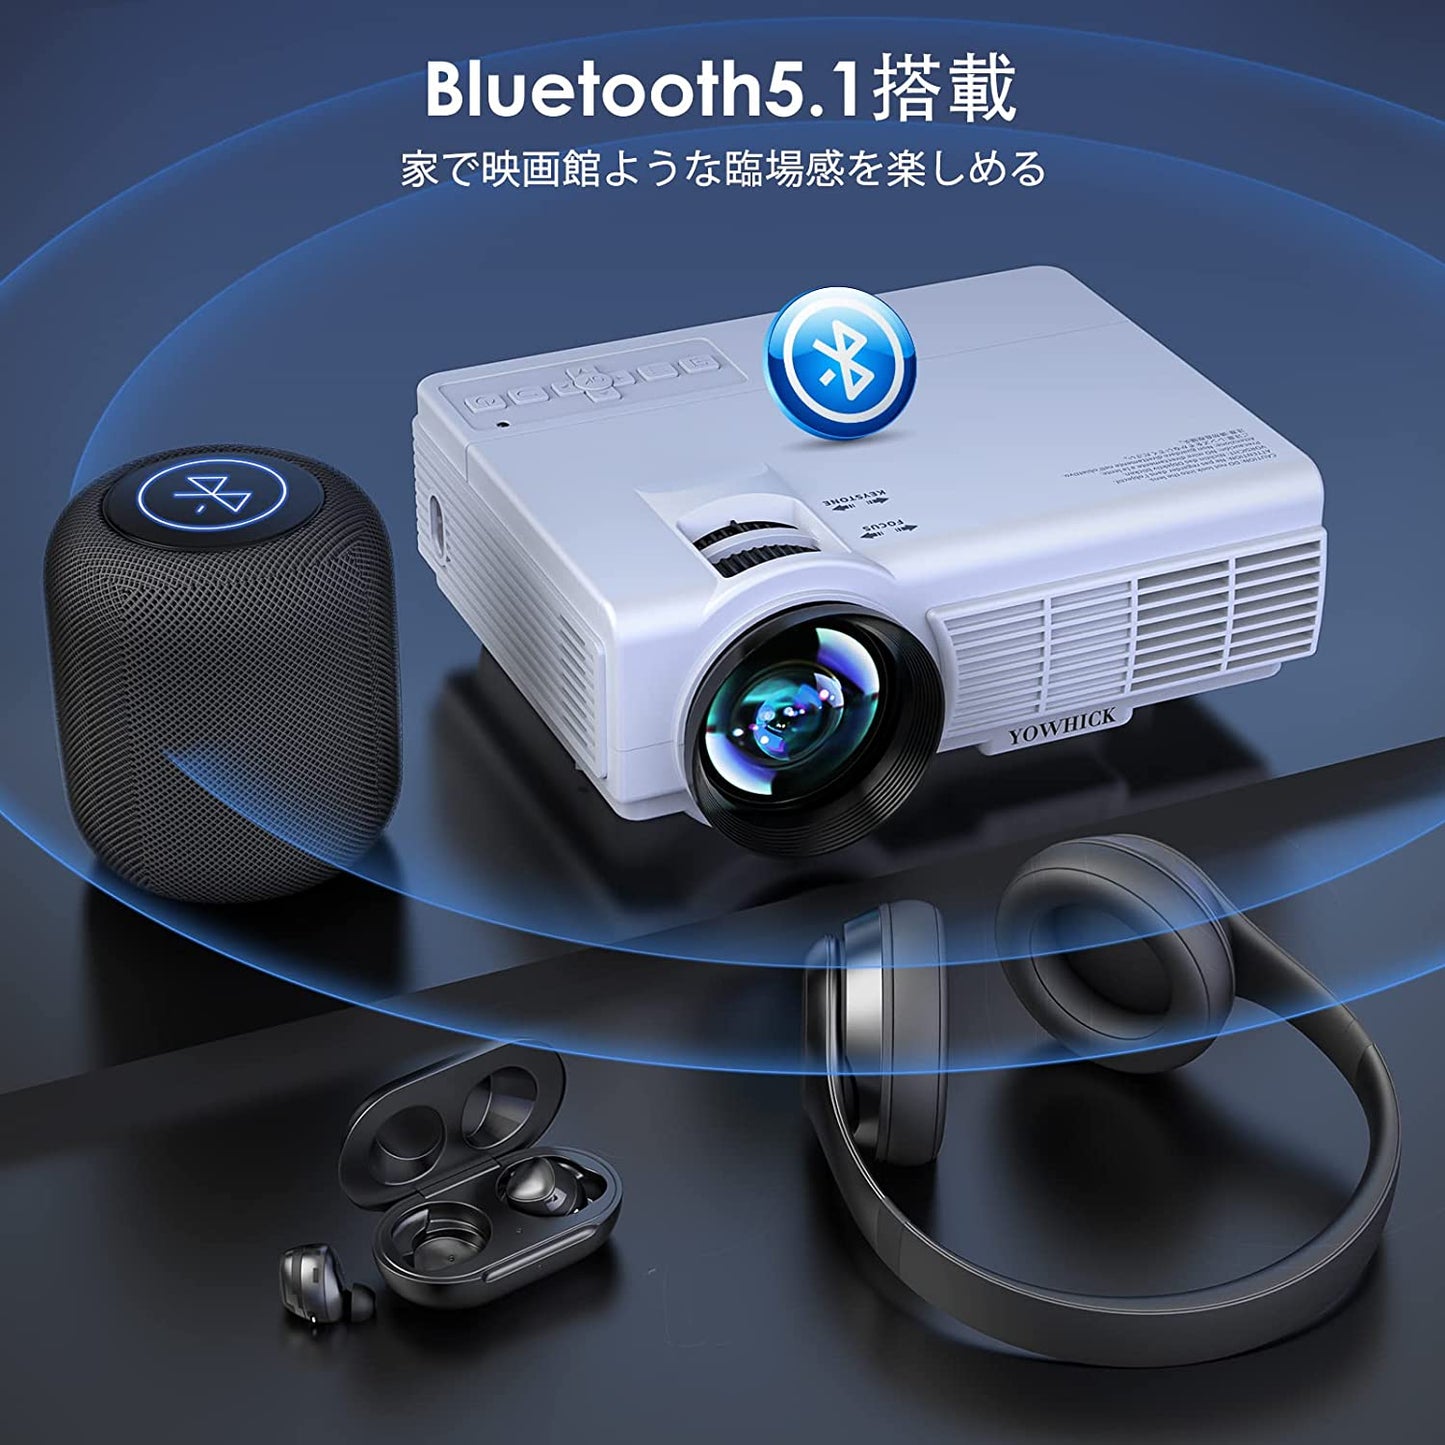 【5GWiFi&Bluetooth5.1対応】 プロジェクター 小型 ホームプロジェクター 11000LM 1080P フルHD 4K対応 100" スクリーン付き デュアルスピーカー内蔵 台形補正 ズーム機能 HIFI 家庭用プロジェクター